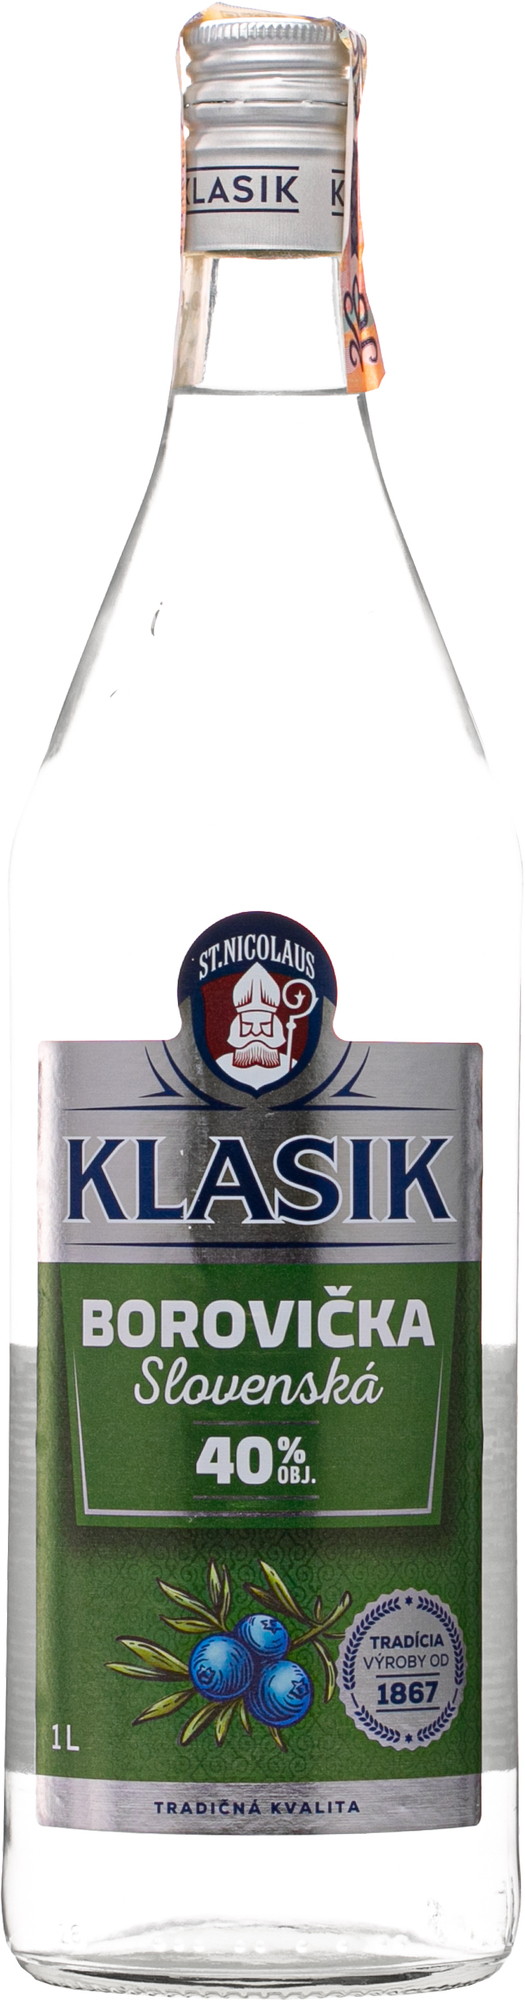 Nicolaus Klasik Borovička 1l 40% (čistá fľaša)